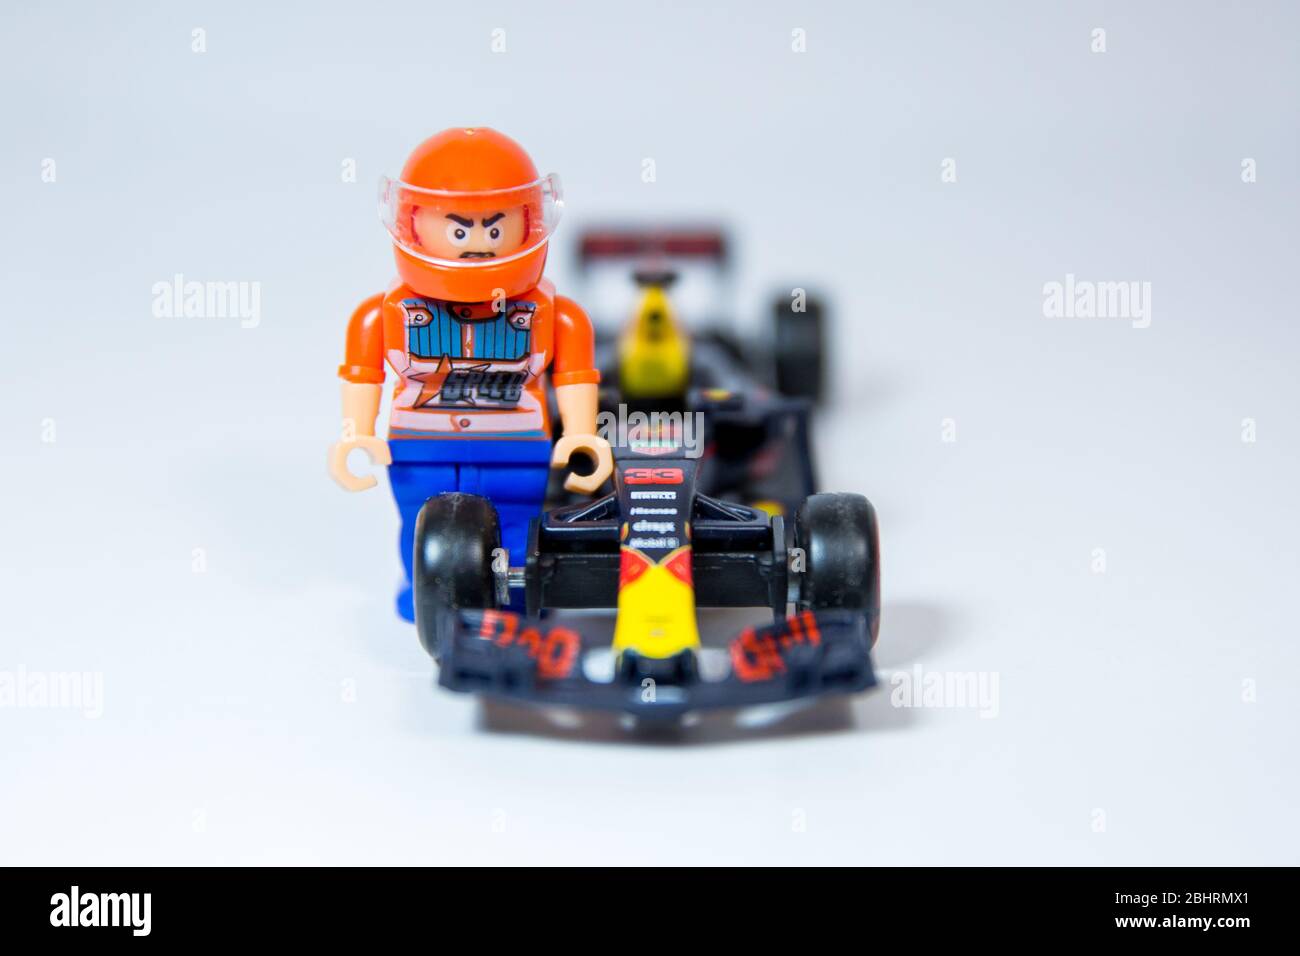 Bburago Red Bull Racing RB 1: model Formula One car. Max